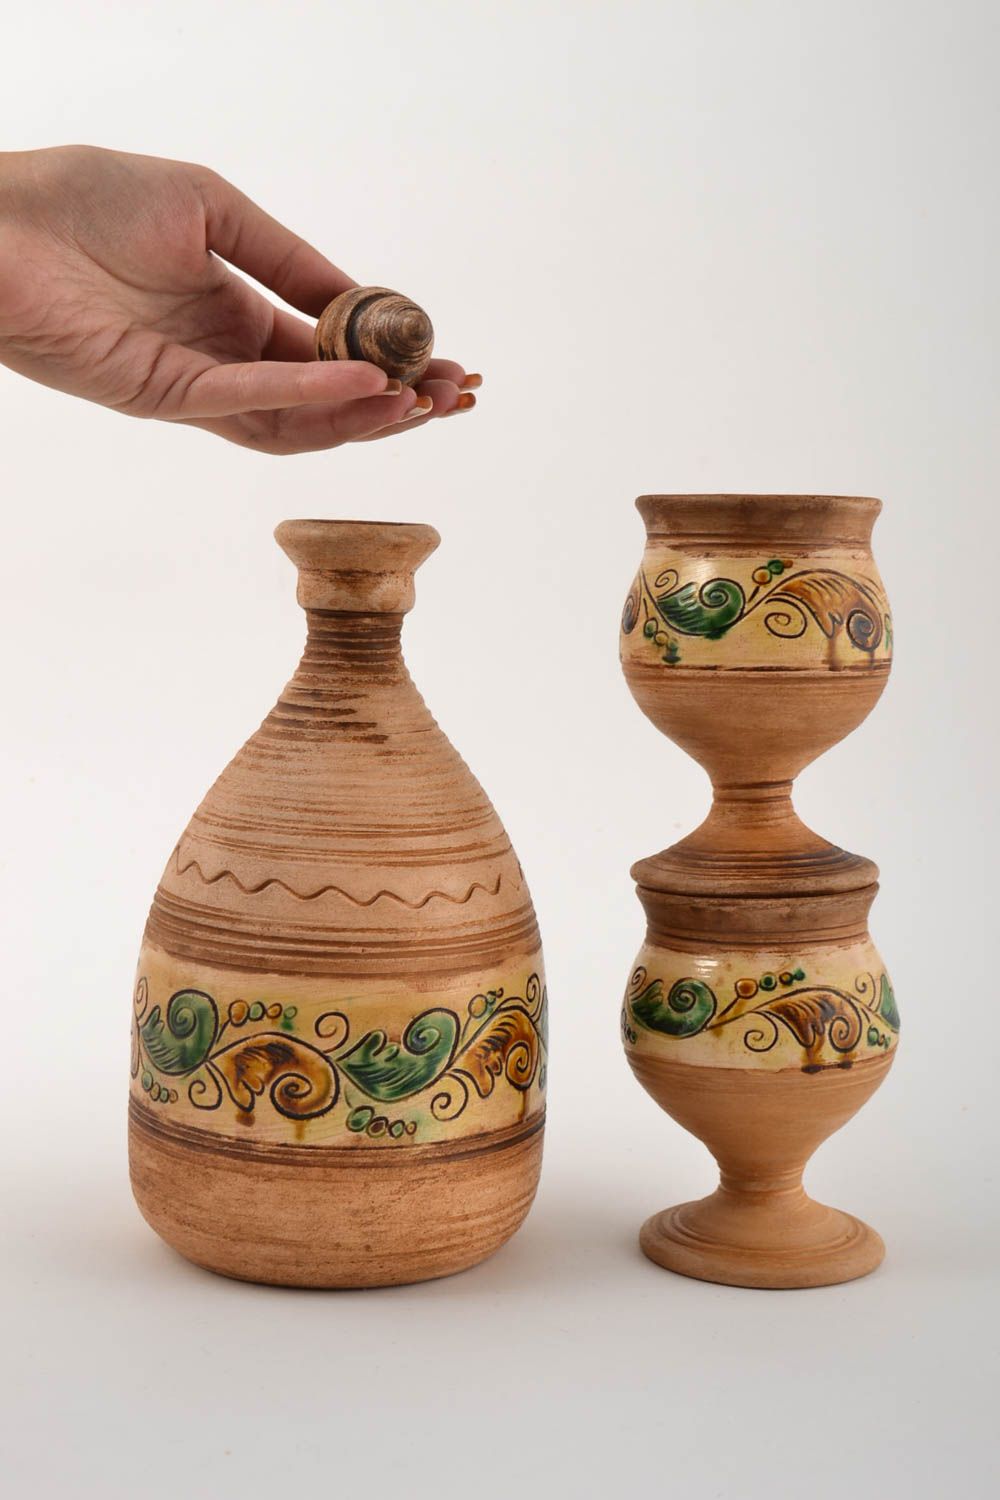 Juego de vajilla artesanal garrafa de cerámica y dos vasos originales pintados foto 2